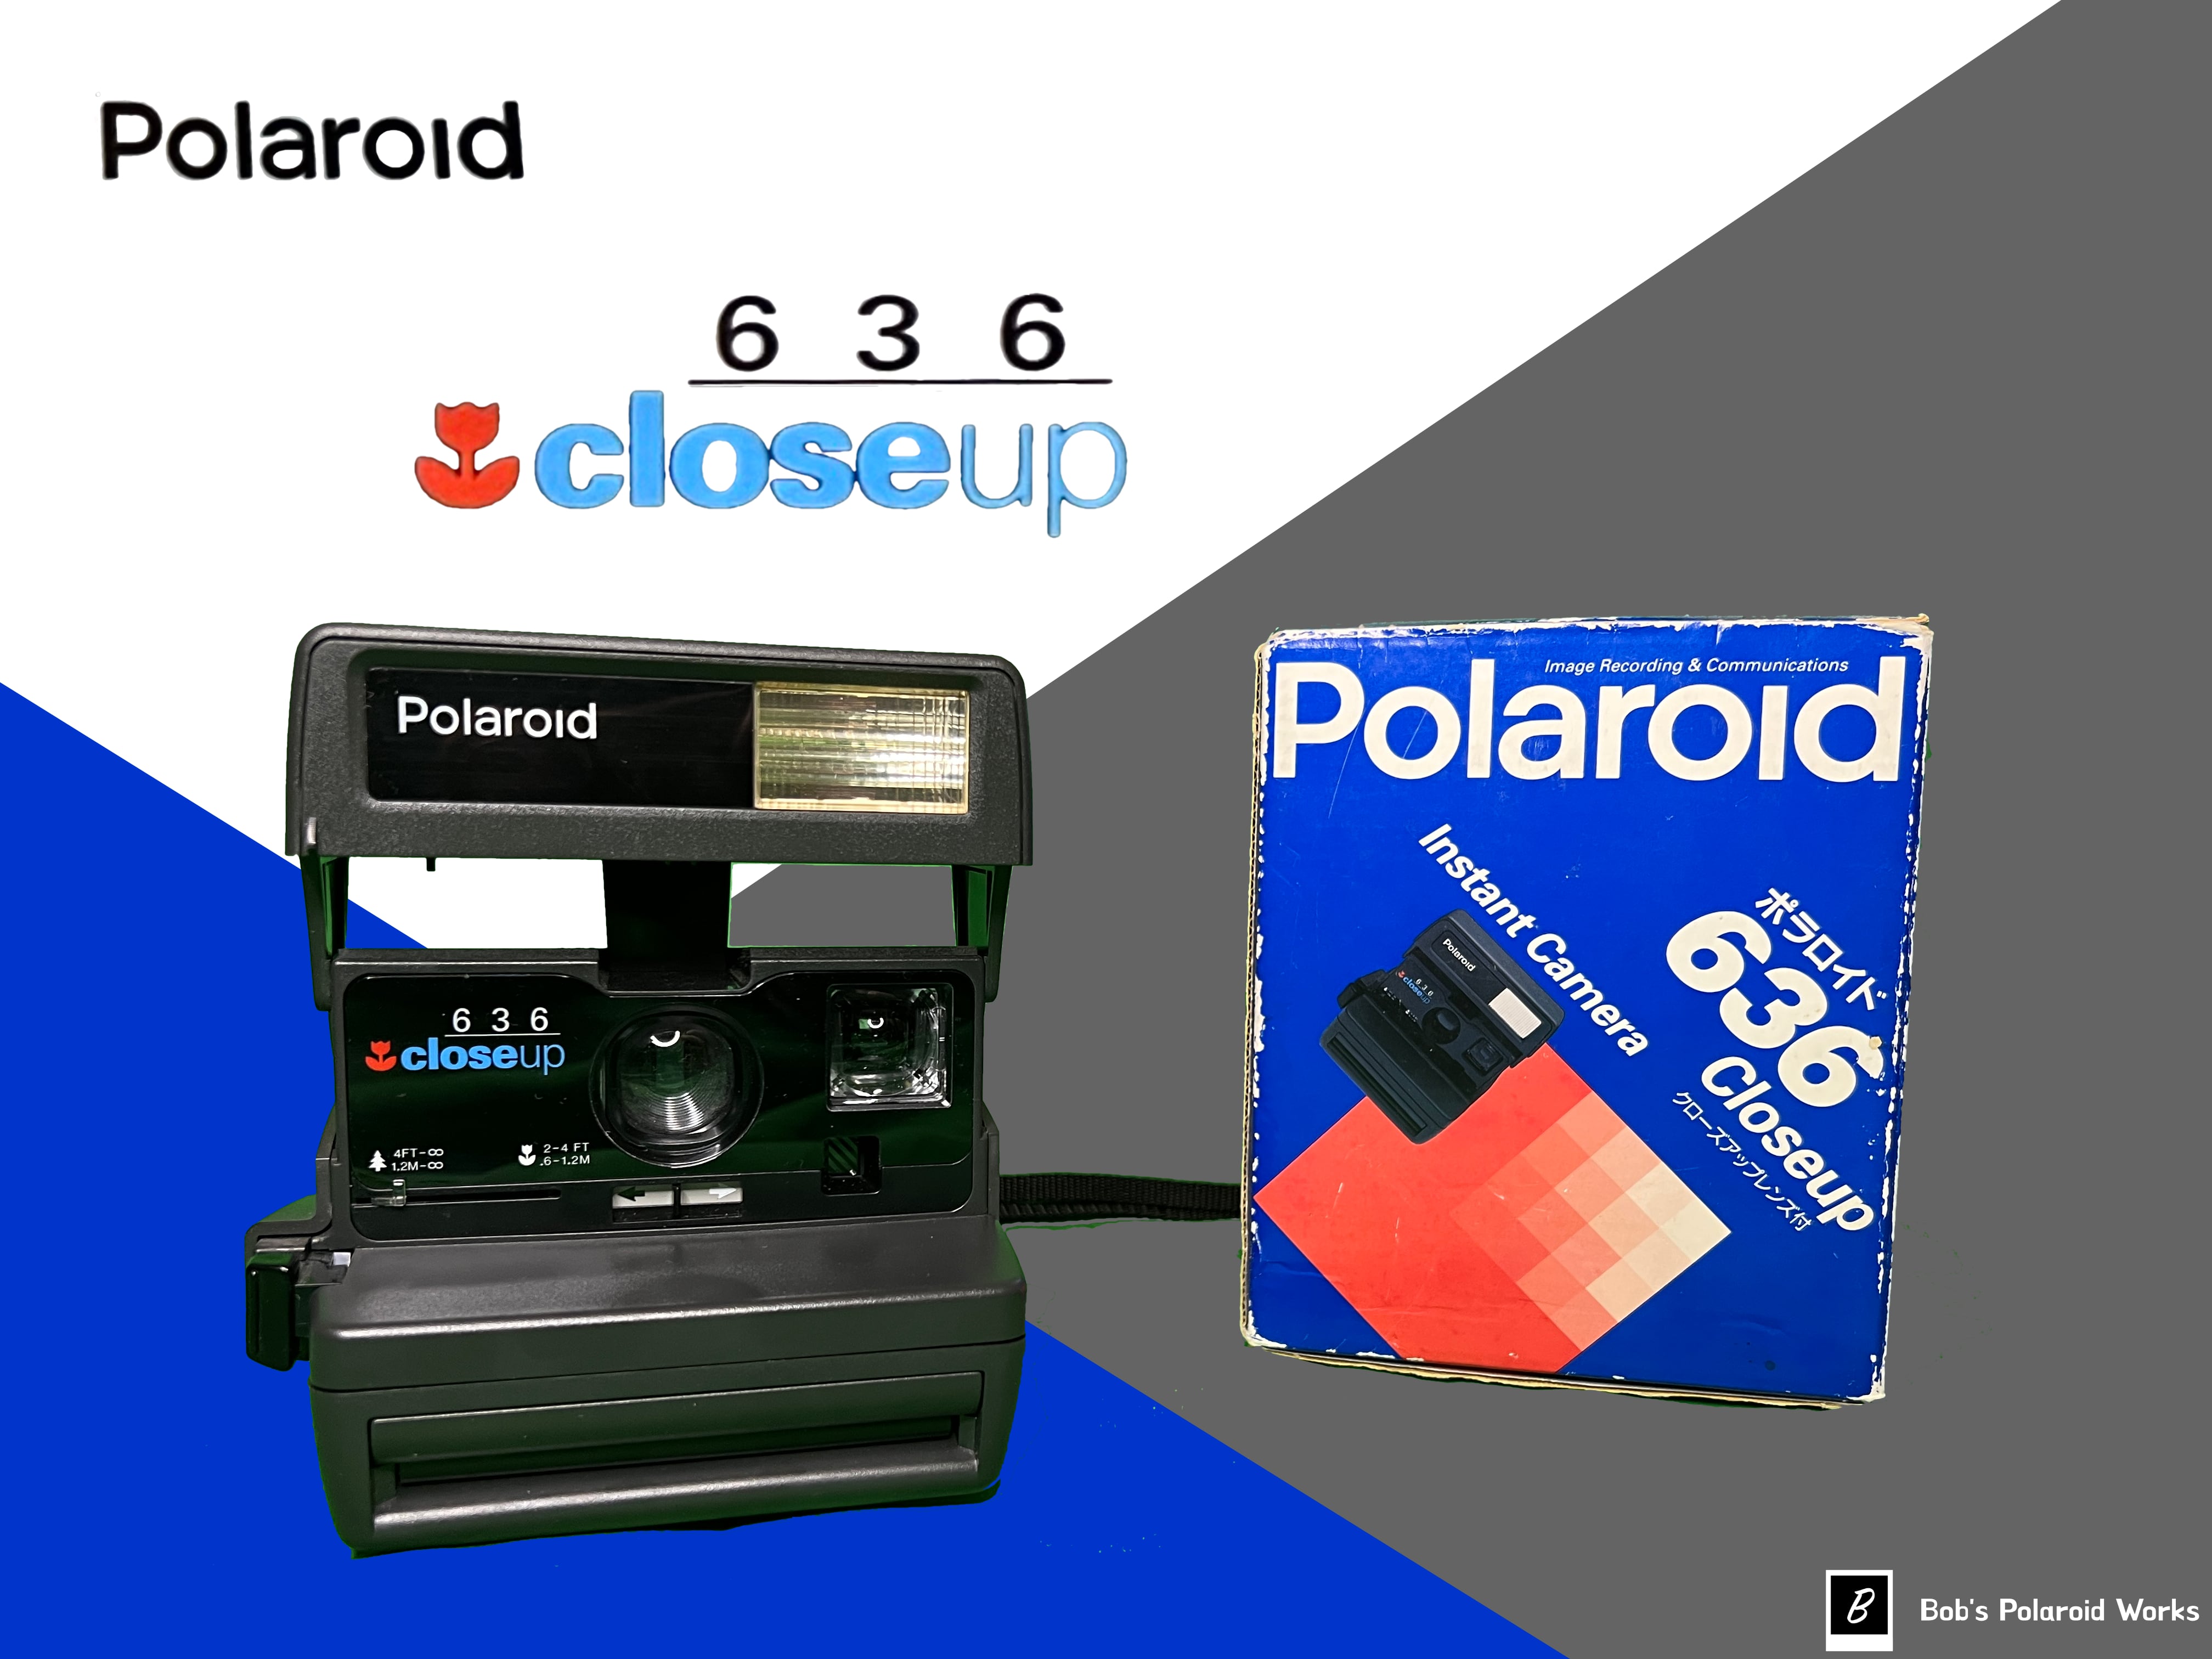 【C3754】Polaroid 636 Close up ポラロイドカメラ